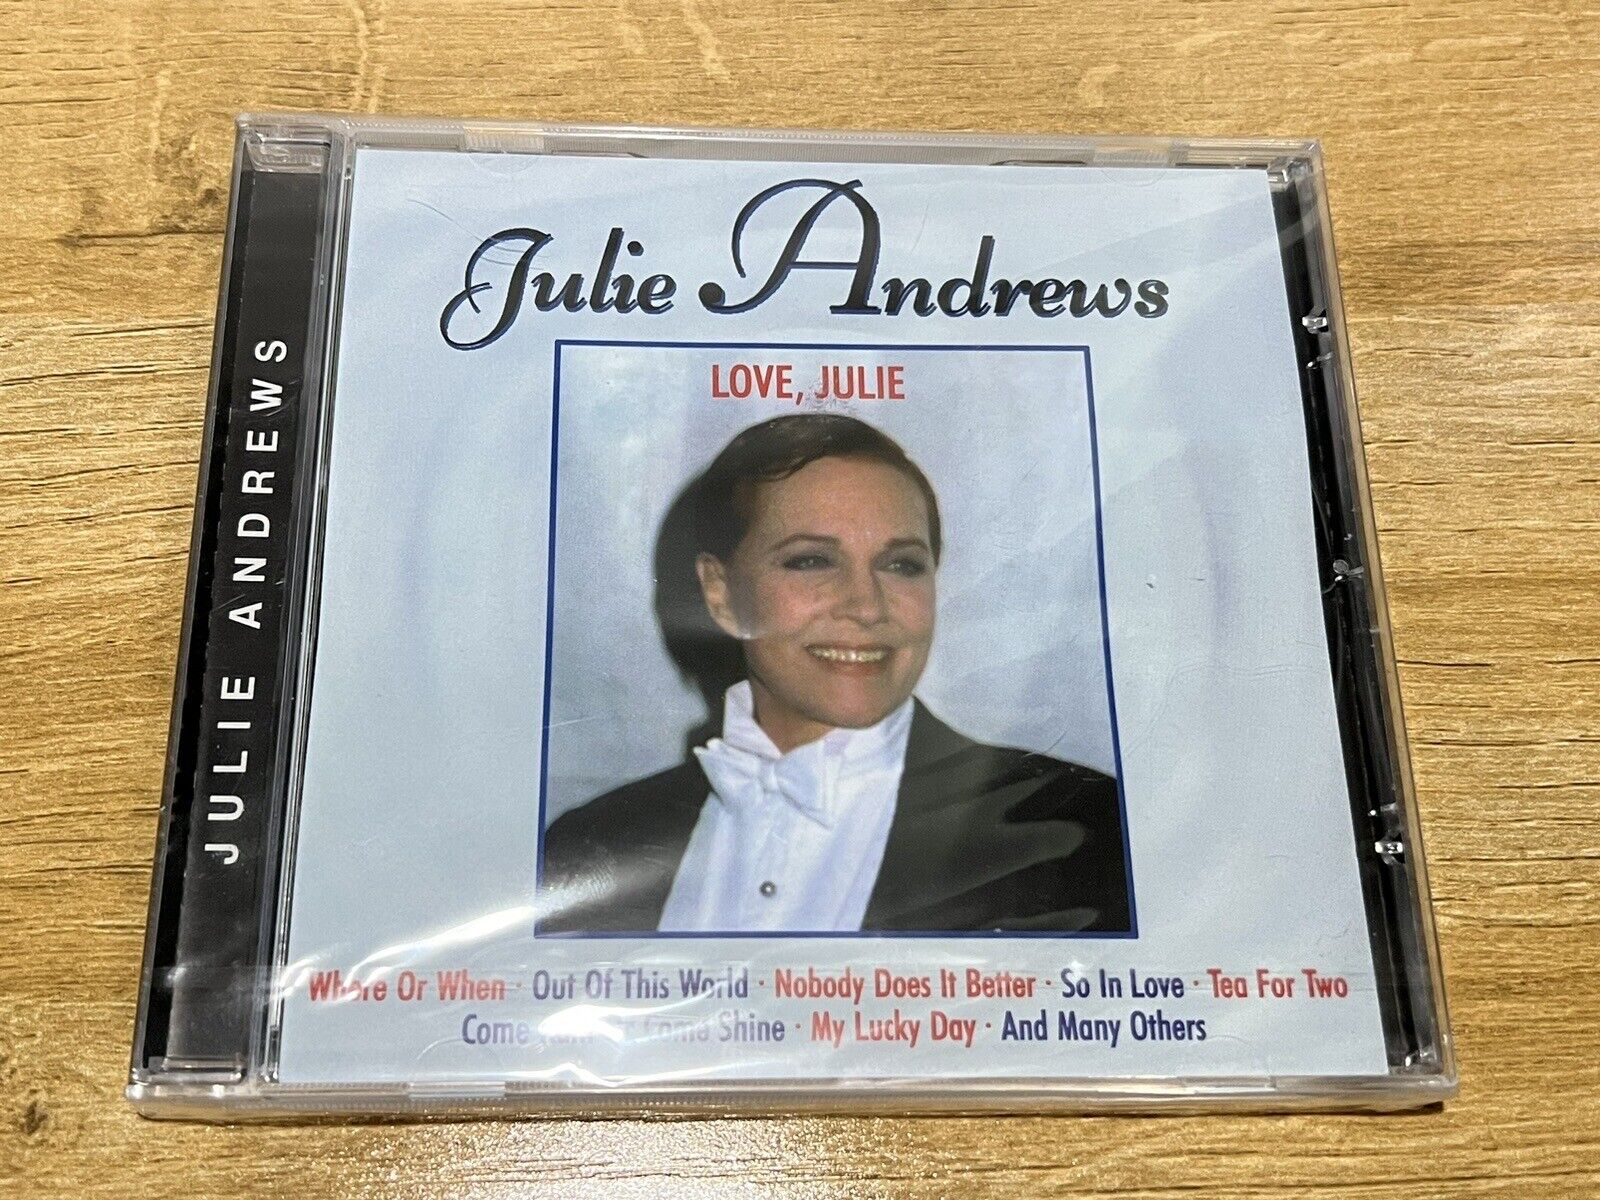 Love Julie - Julie Andrews - CD 1999 Selected Sound Carrier Switzerland - NEW